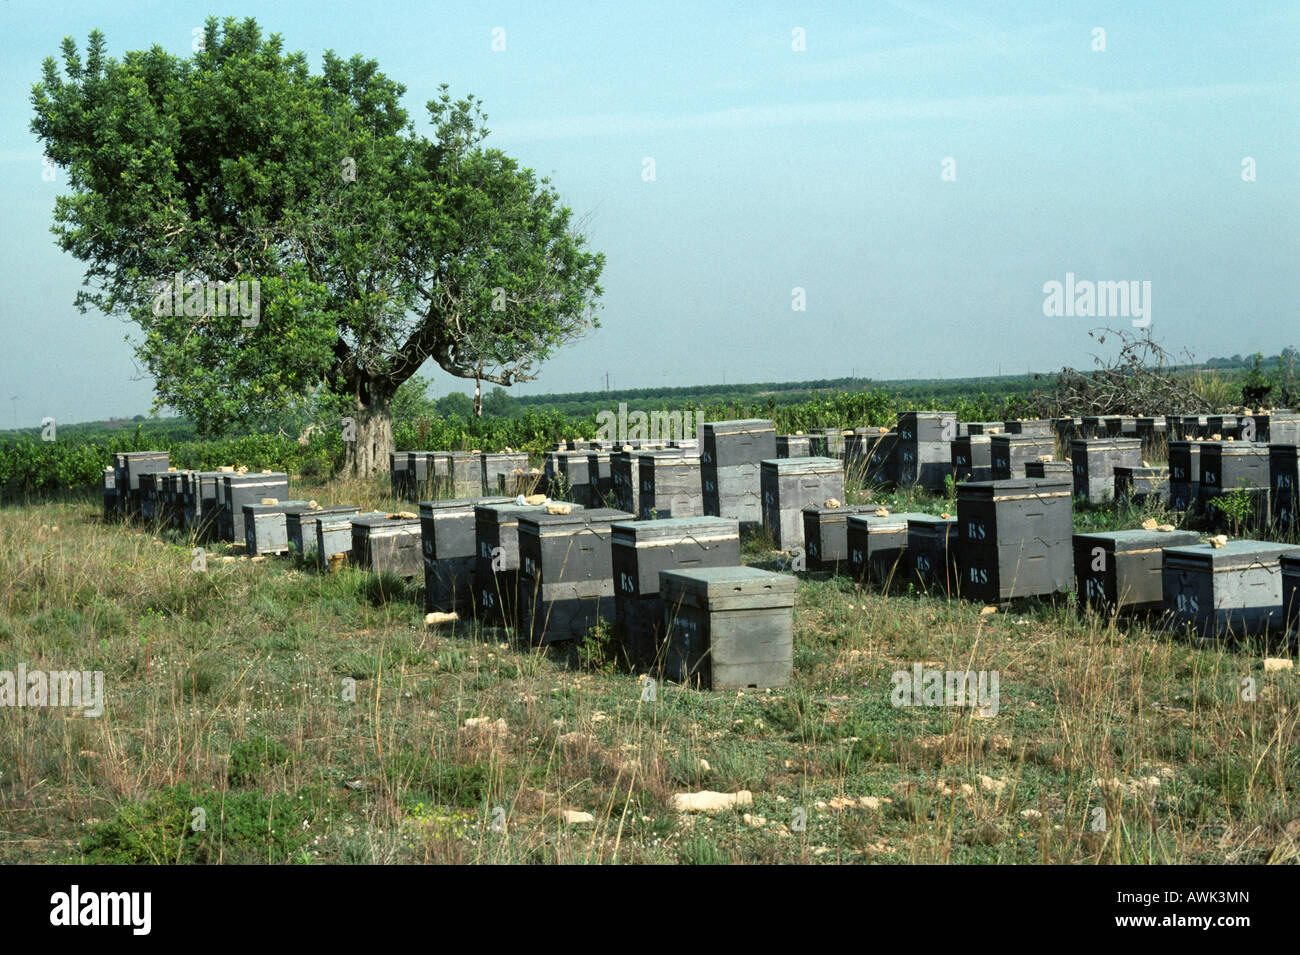 Plusieurs ruches placés à proximité des zones de culture d'agrumes près de Valence Espagne Banque D'Images